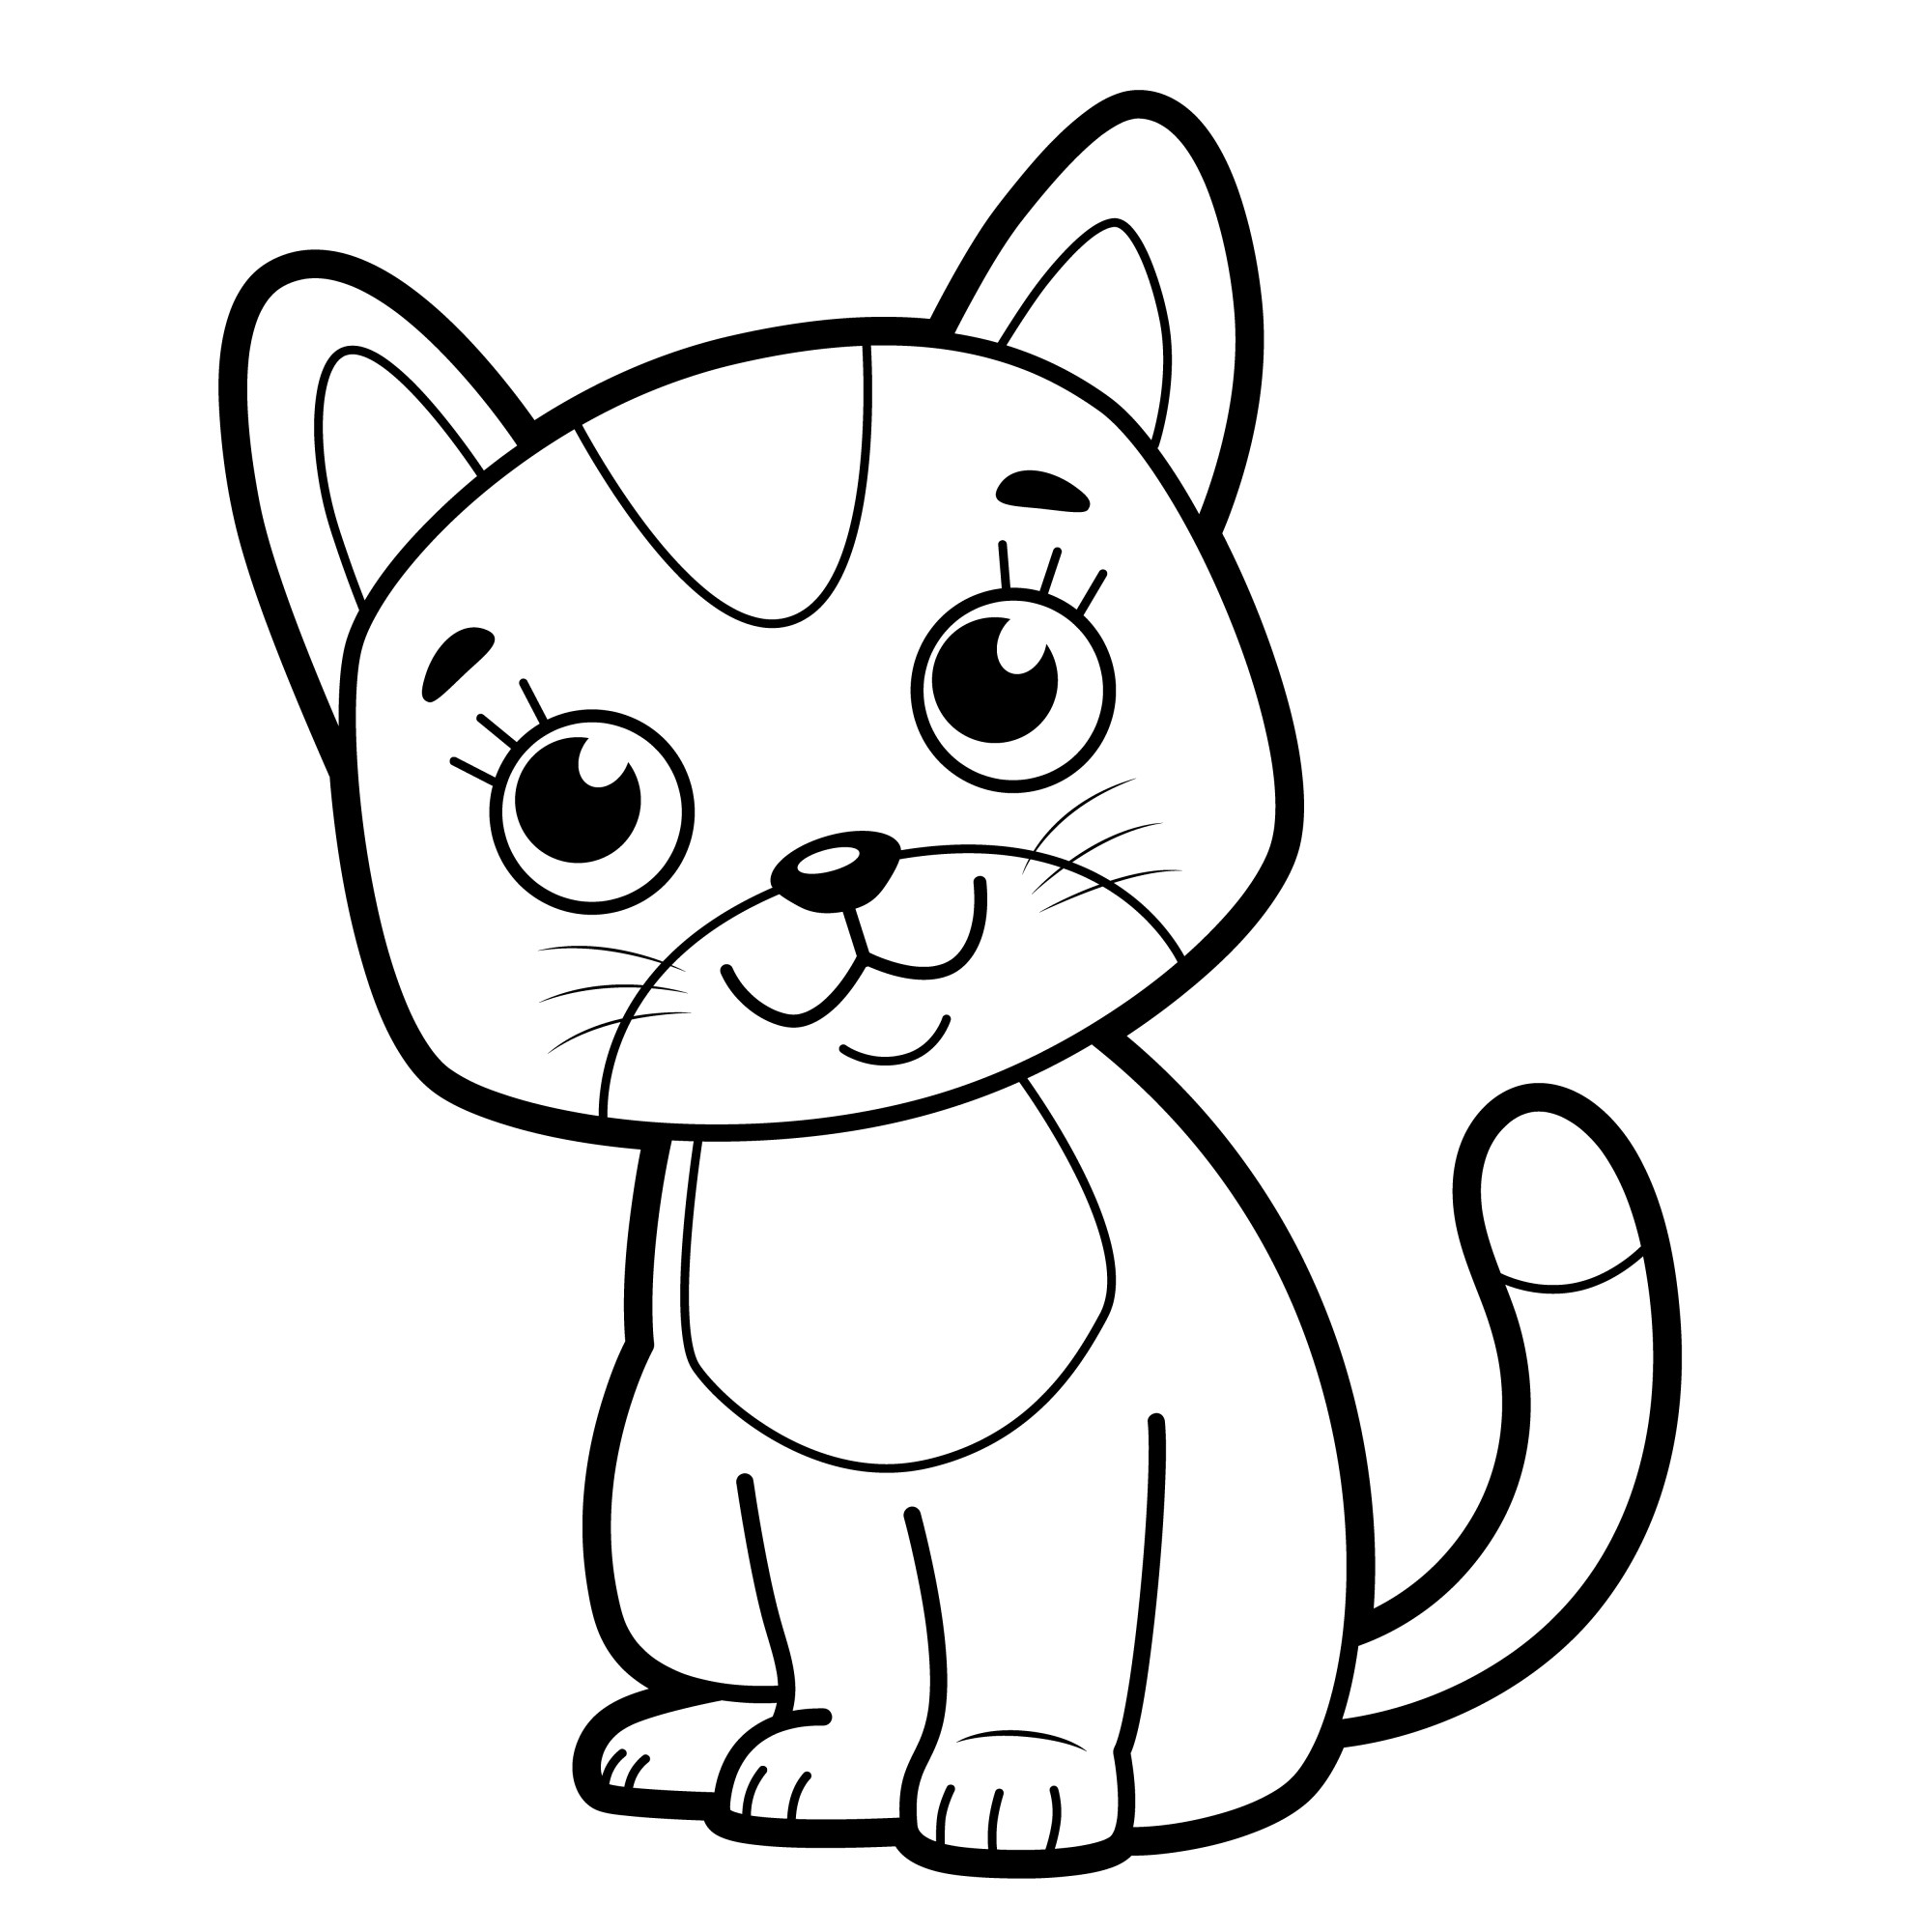 Раскраска для детей: кот из мультфильма